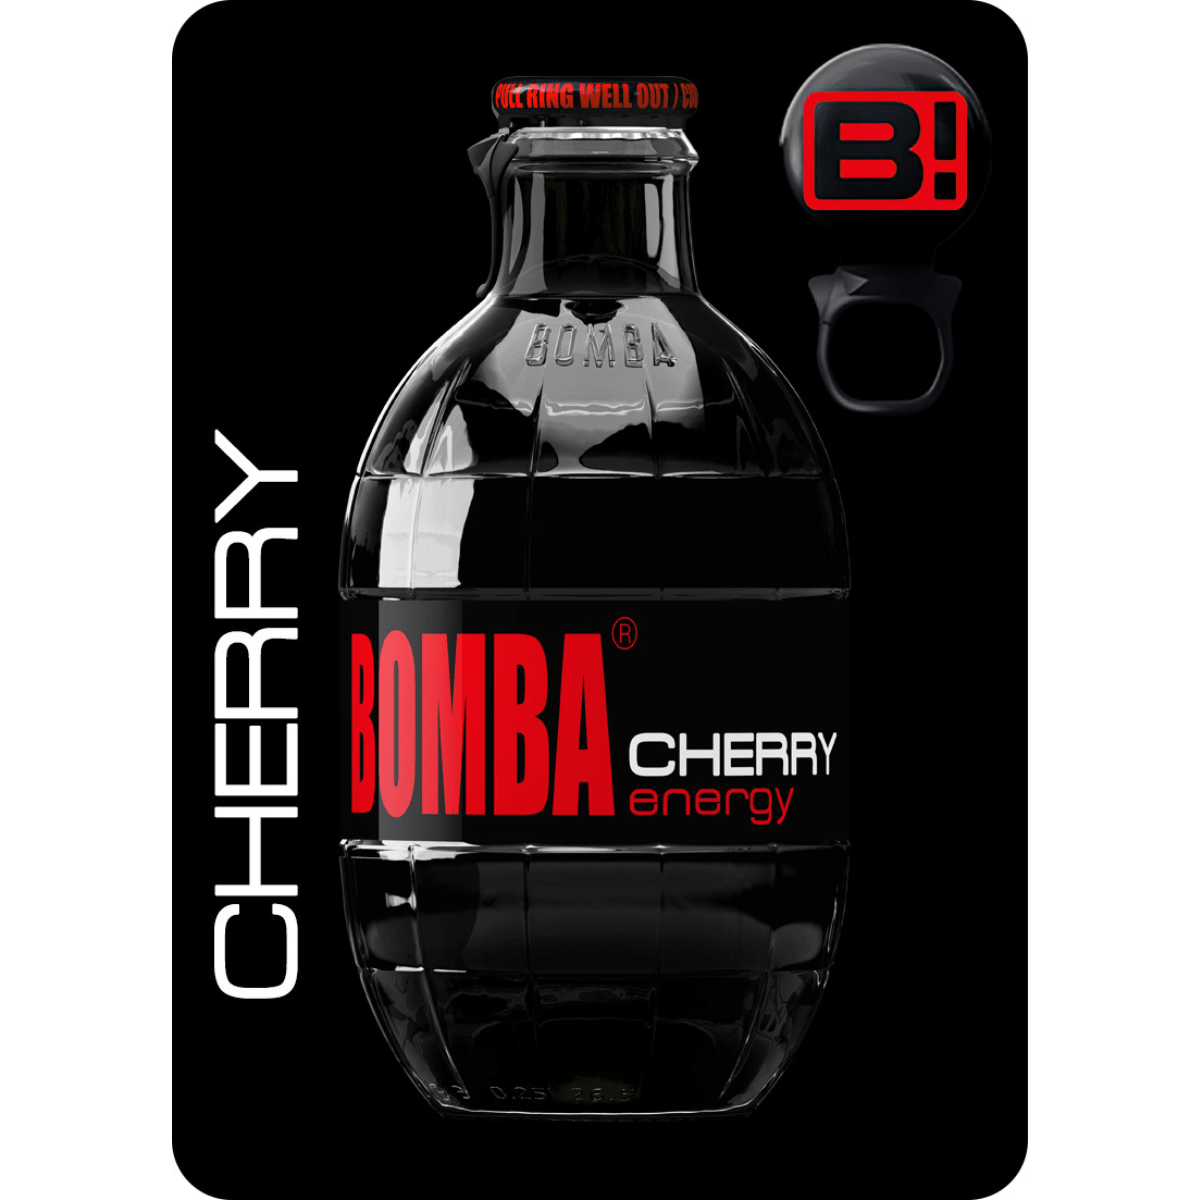 Bomba Cherry enegy 250ml